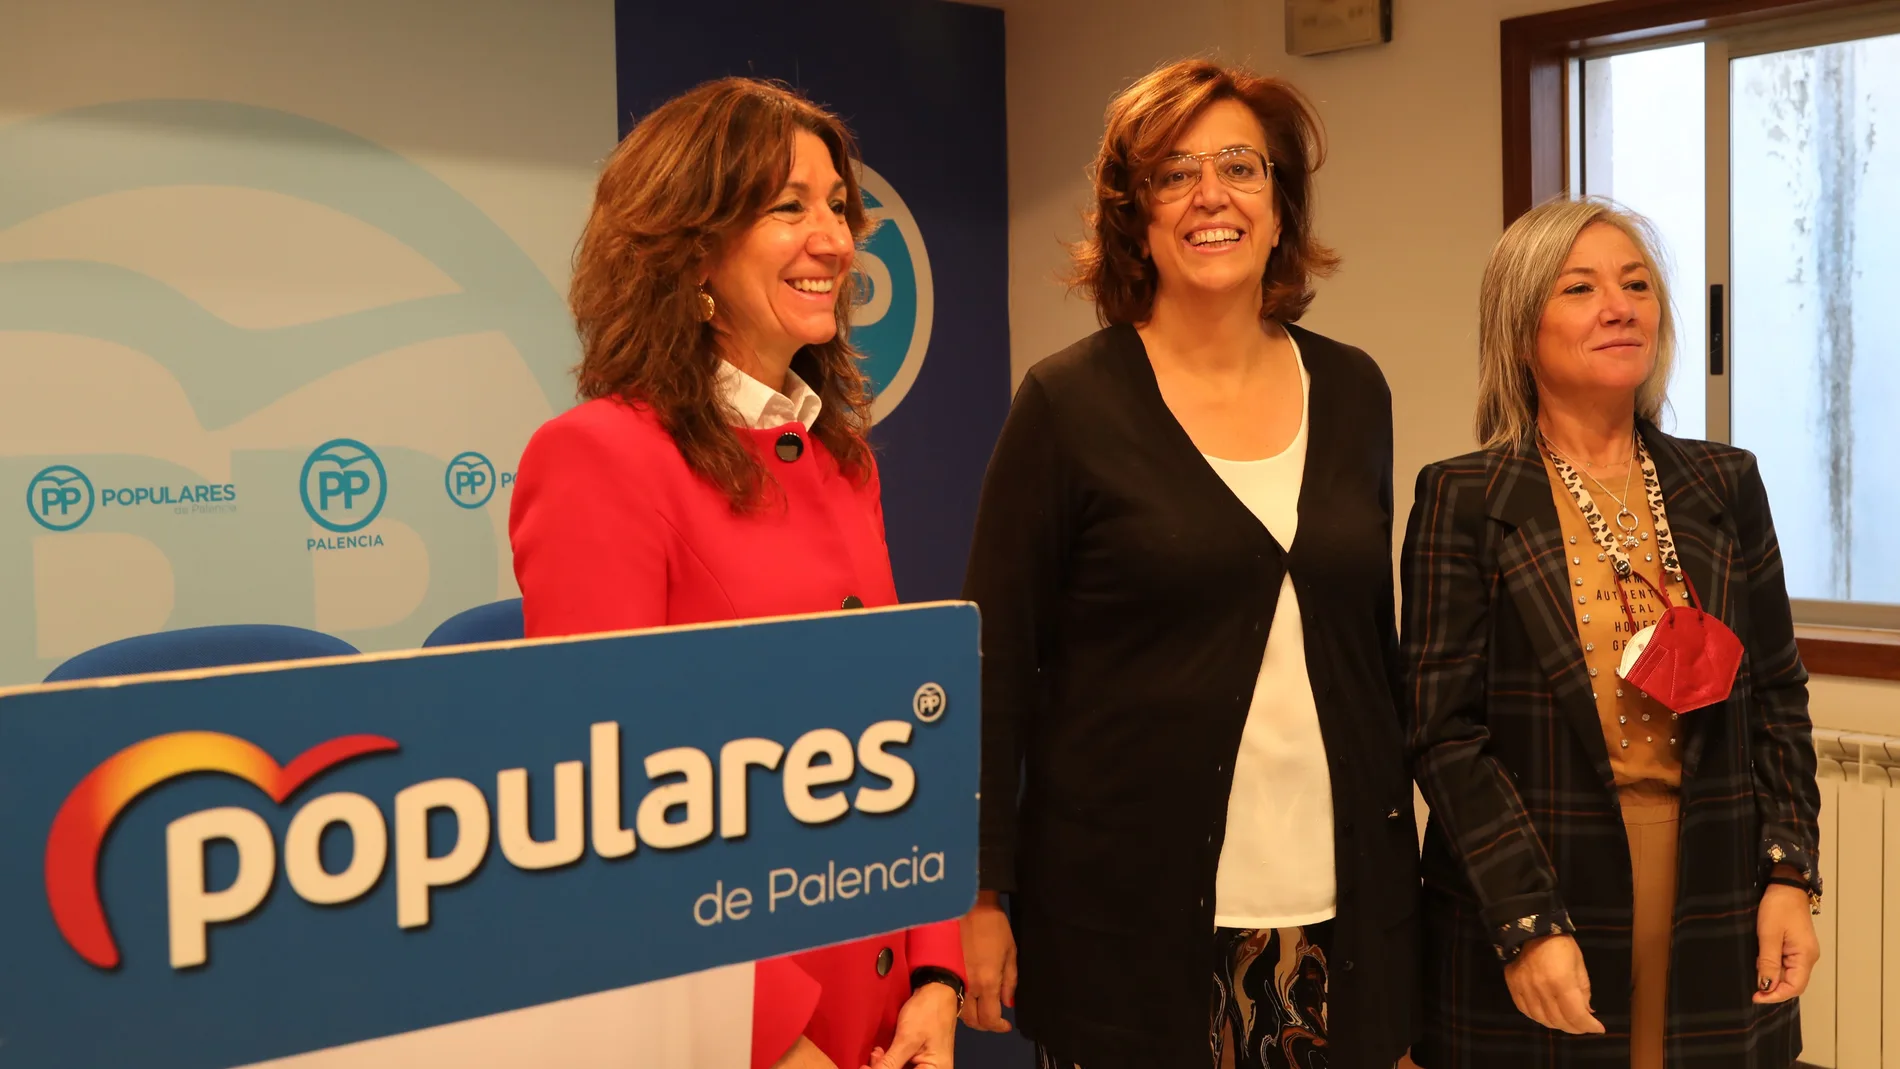 La presidenta del Partido Popular de Palencia, Ángeles Armisén, y las procuradoras regionales Mercedes Cófreces y María José Ortega, tras atender a los periodistas